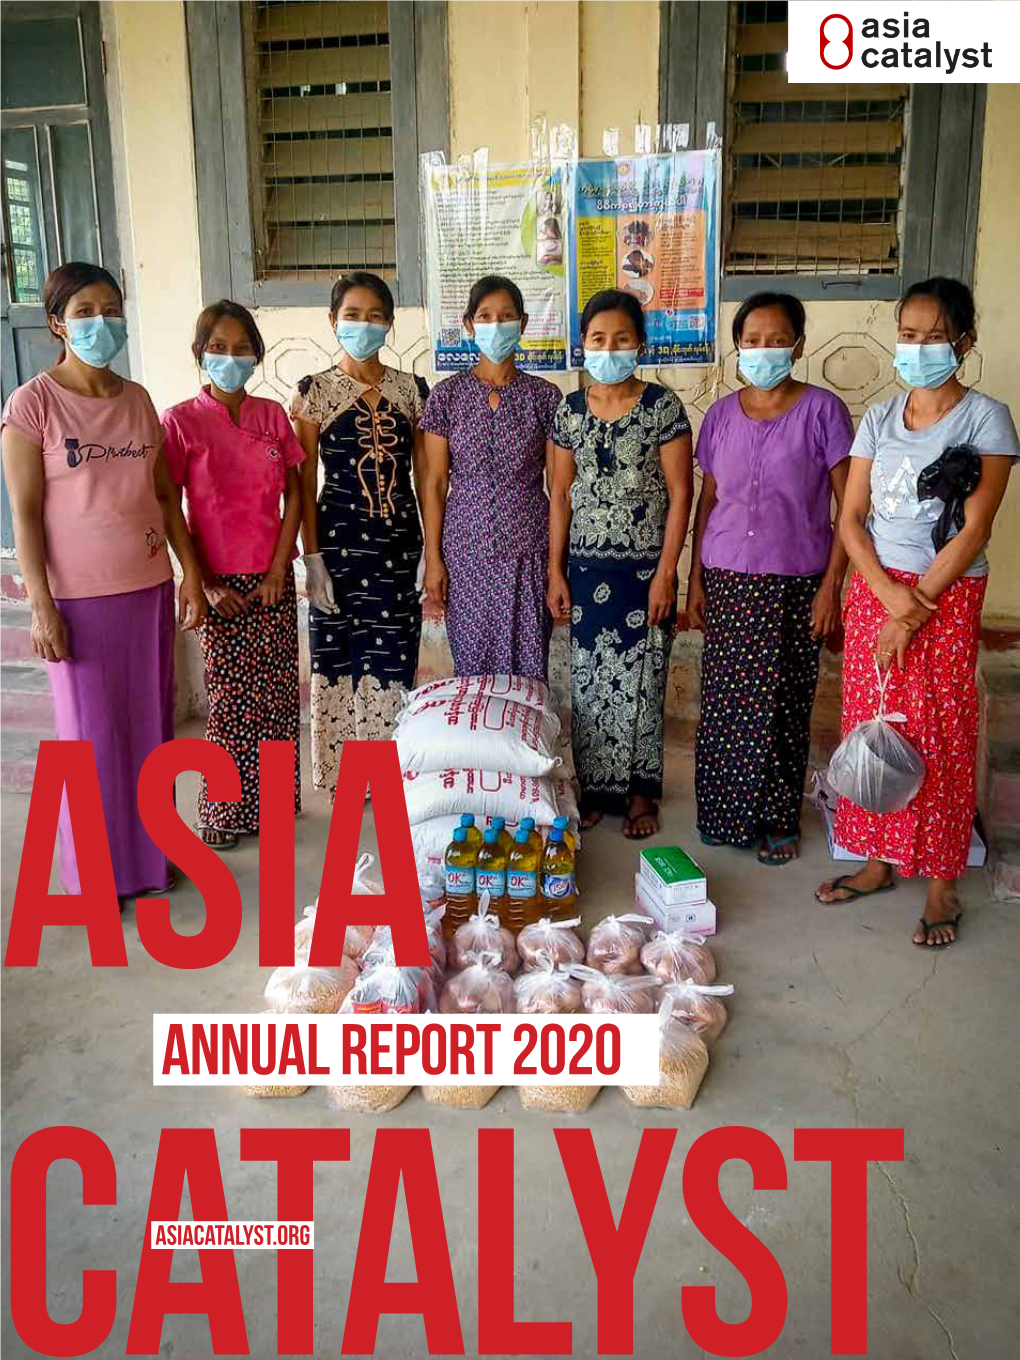 Asia Catalyst Annual Report 2020